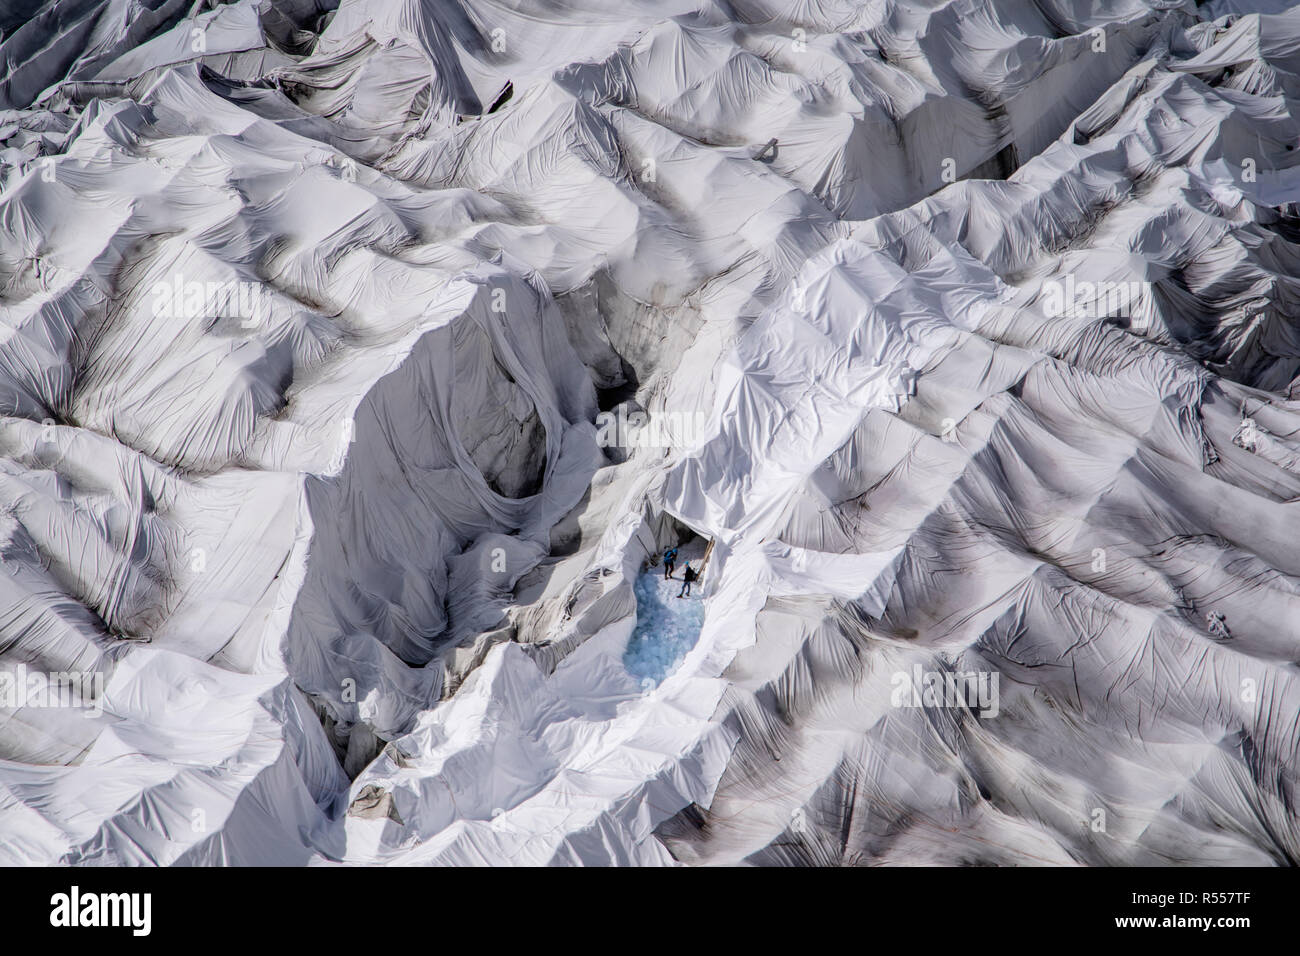 Dos personas pueden ser vistas a la entrada de una cueva de hielo glaciar en la desembocadura del glaciar Ródano en Suiza. La cueva de hielo y el glaciar circundante están cubiertos cada año con enormes sábanas de frazadas de felpa para frenar la inevitable fusión del glaciar debido al clima más cálido. Una atracción turística popular desde 1870s, el glaciar está desapareciendo rápidamente. Con temperaturas medias más altas y falta de precipitación, el glaciar del Ródano se está reduciendo drásticamente. Un invierno excepcionalmente nevado no fue suficiente para compensar el verano extremo, que hizo que los glaciares perdieran el 2,5% de su volumen, t Foto de stock